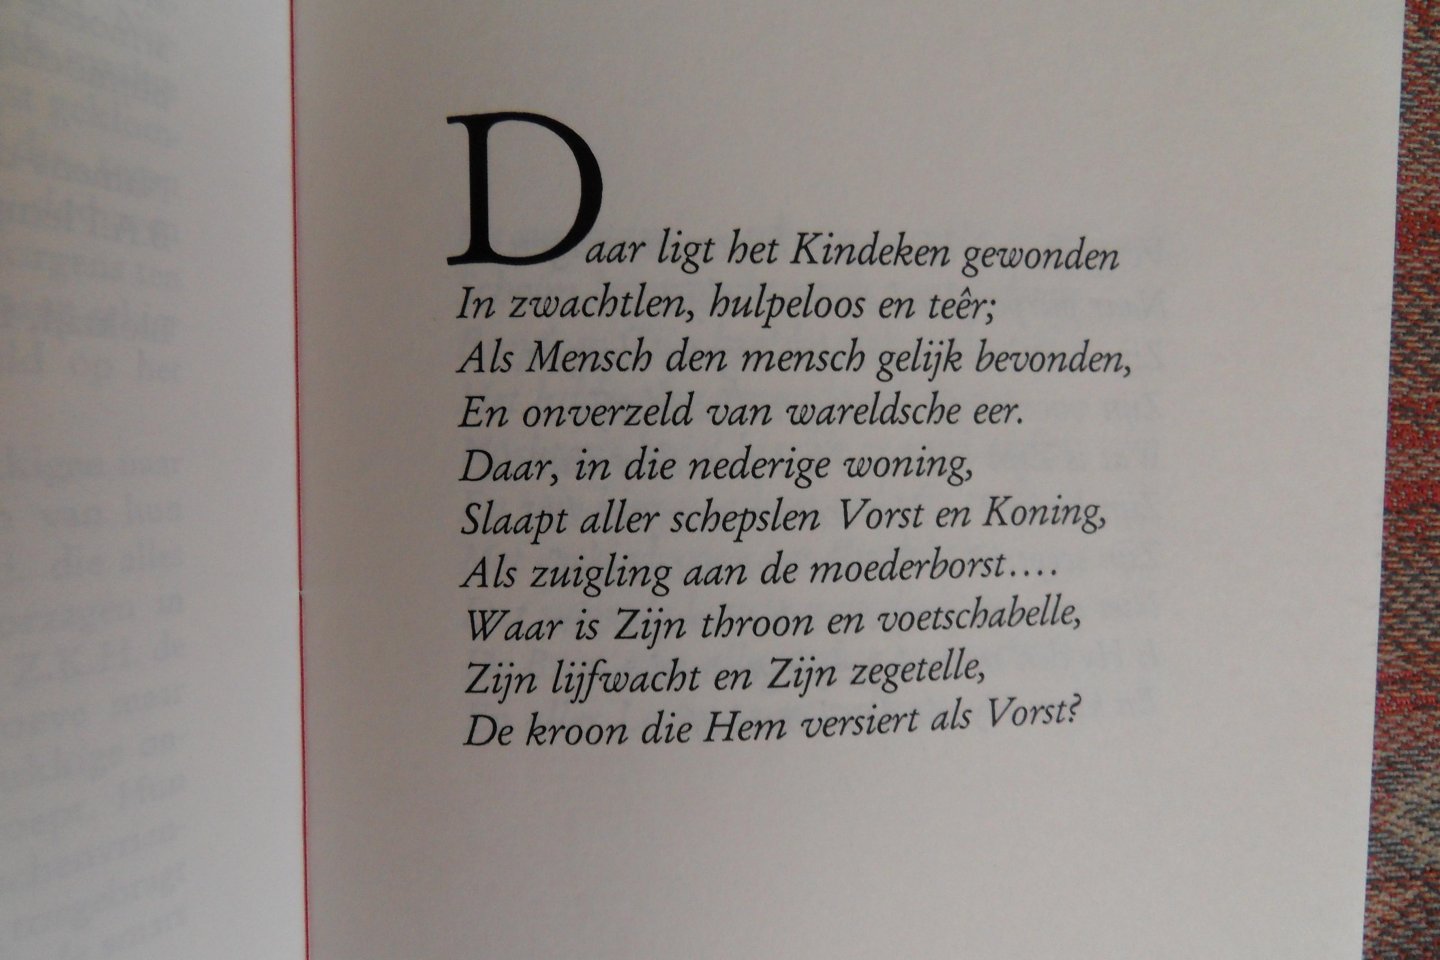 Lesturgeon, A.L. [ Met een GESIGNEERD briefje van de drukker Cees van Dijk ]. - Purpergloed noch Hermelijn. [ Beperkte oplage van 60 ex. ].